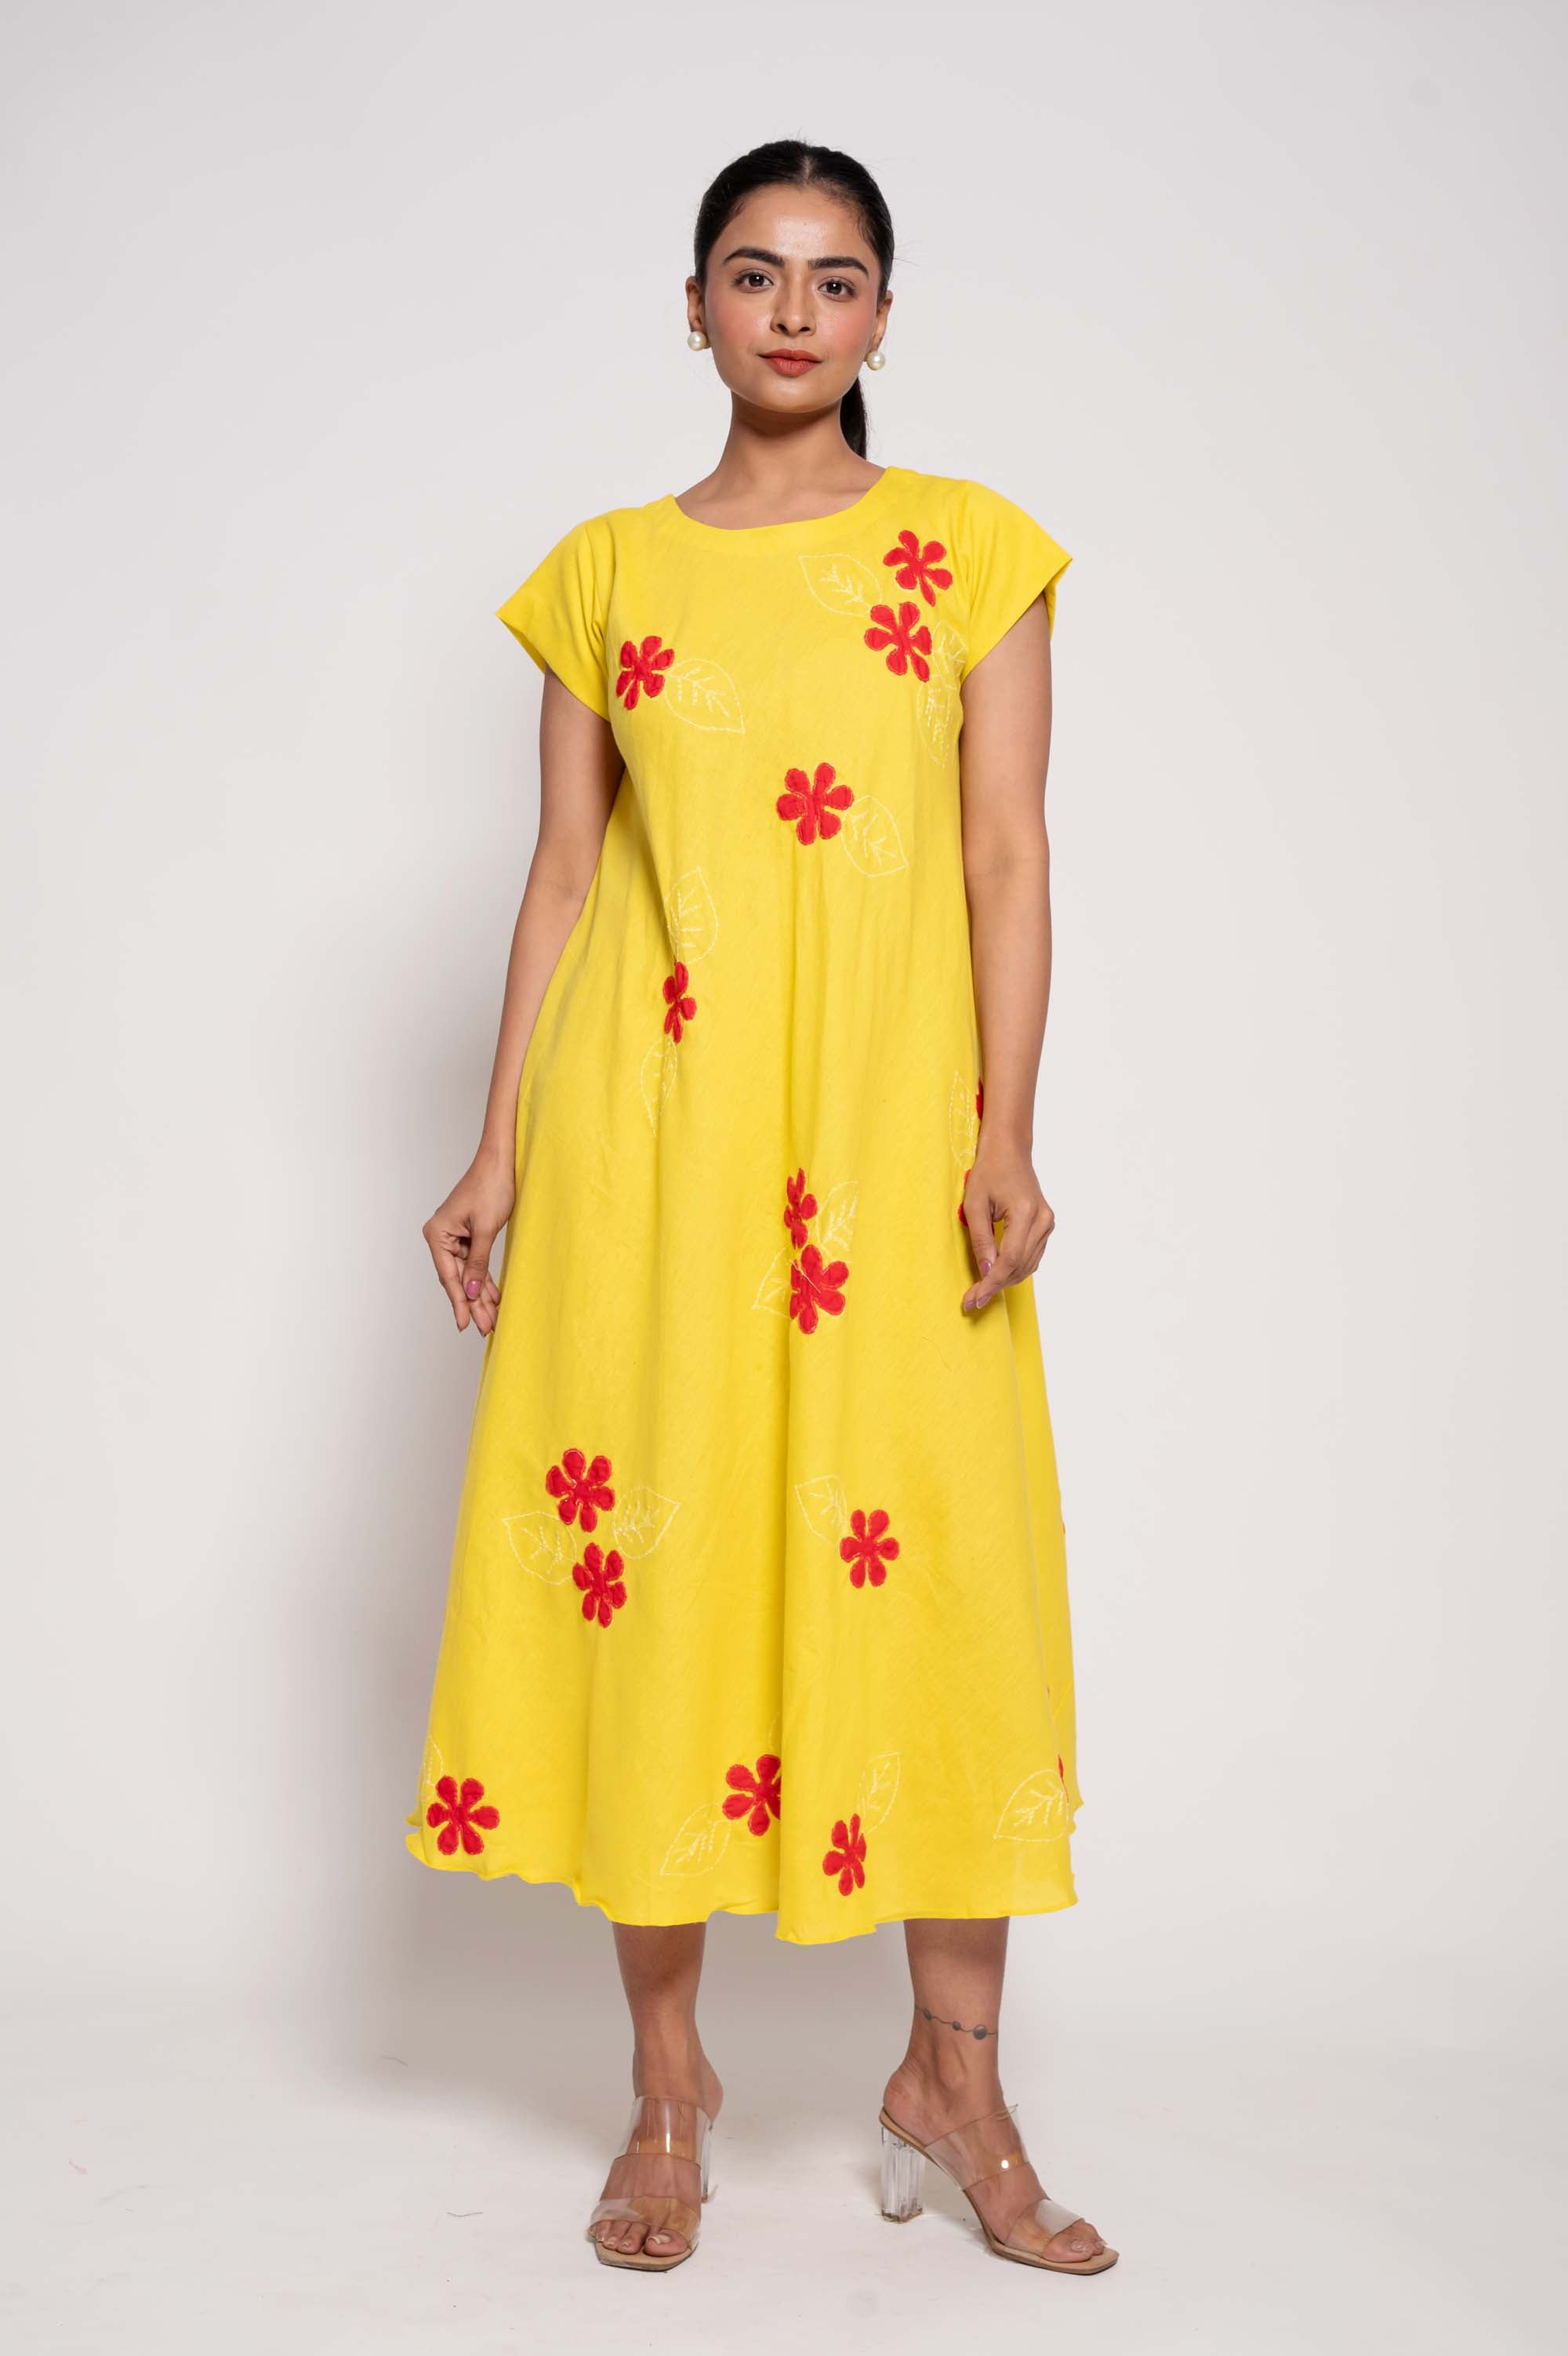 Short Sleeved floral patchwork dress